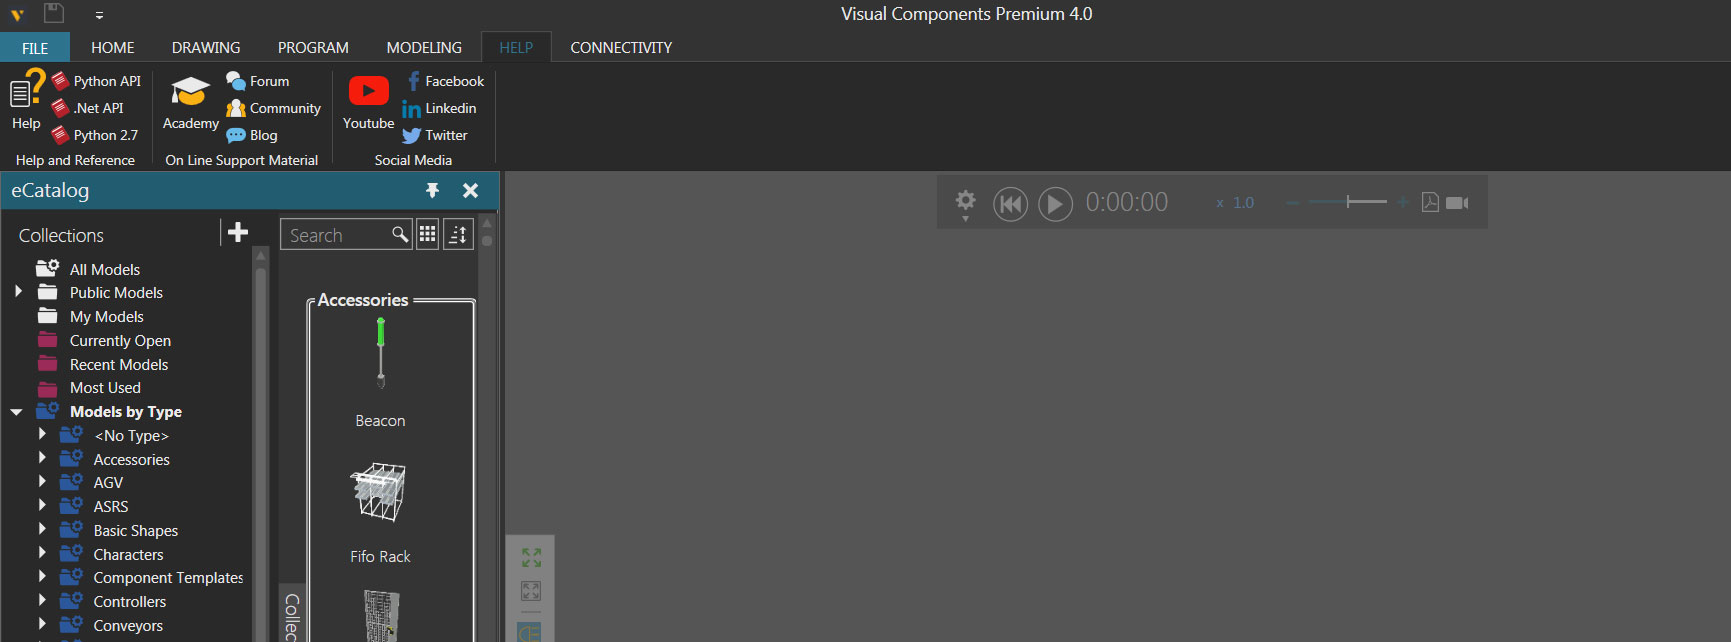 Visual Components eCatalog menu